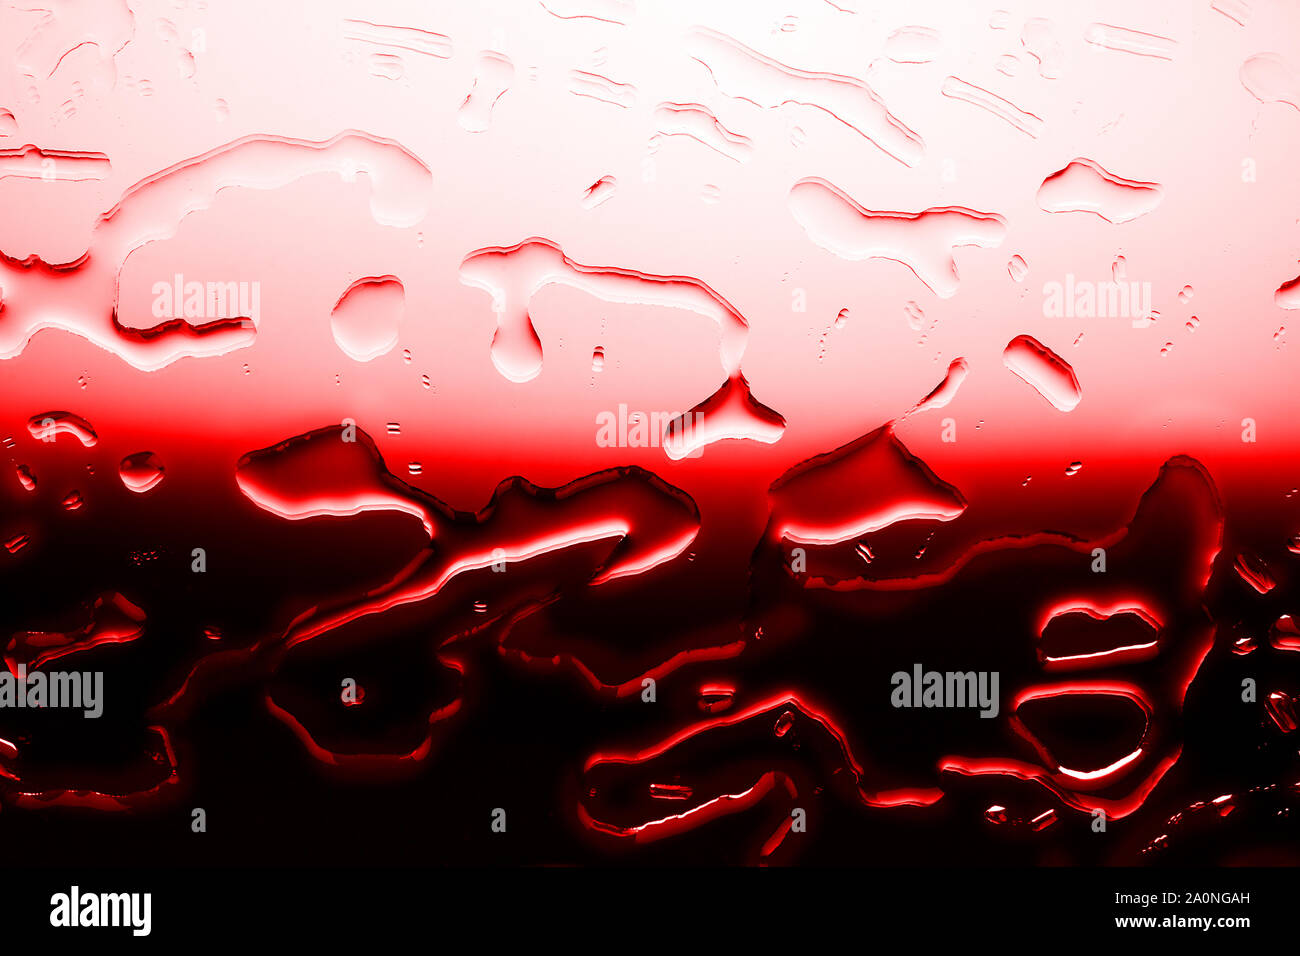 Bloody rosso sfondo testurizzato, la fuoriuscita di gocce d'acqua in rosso il contrasto dei colori gradiente, sangue di prova o illustrazione del donatore, astratto modello horror close up Foto Stock